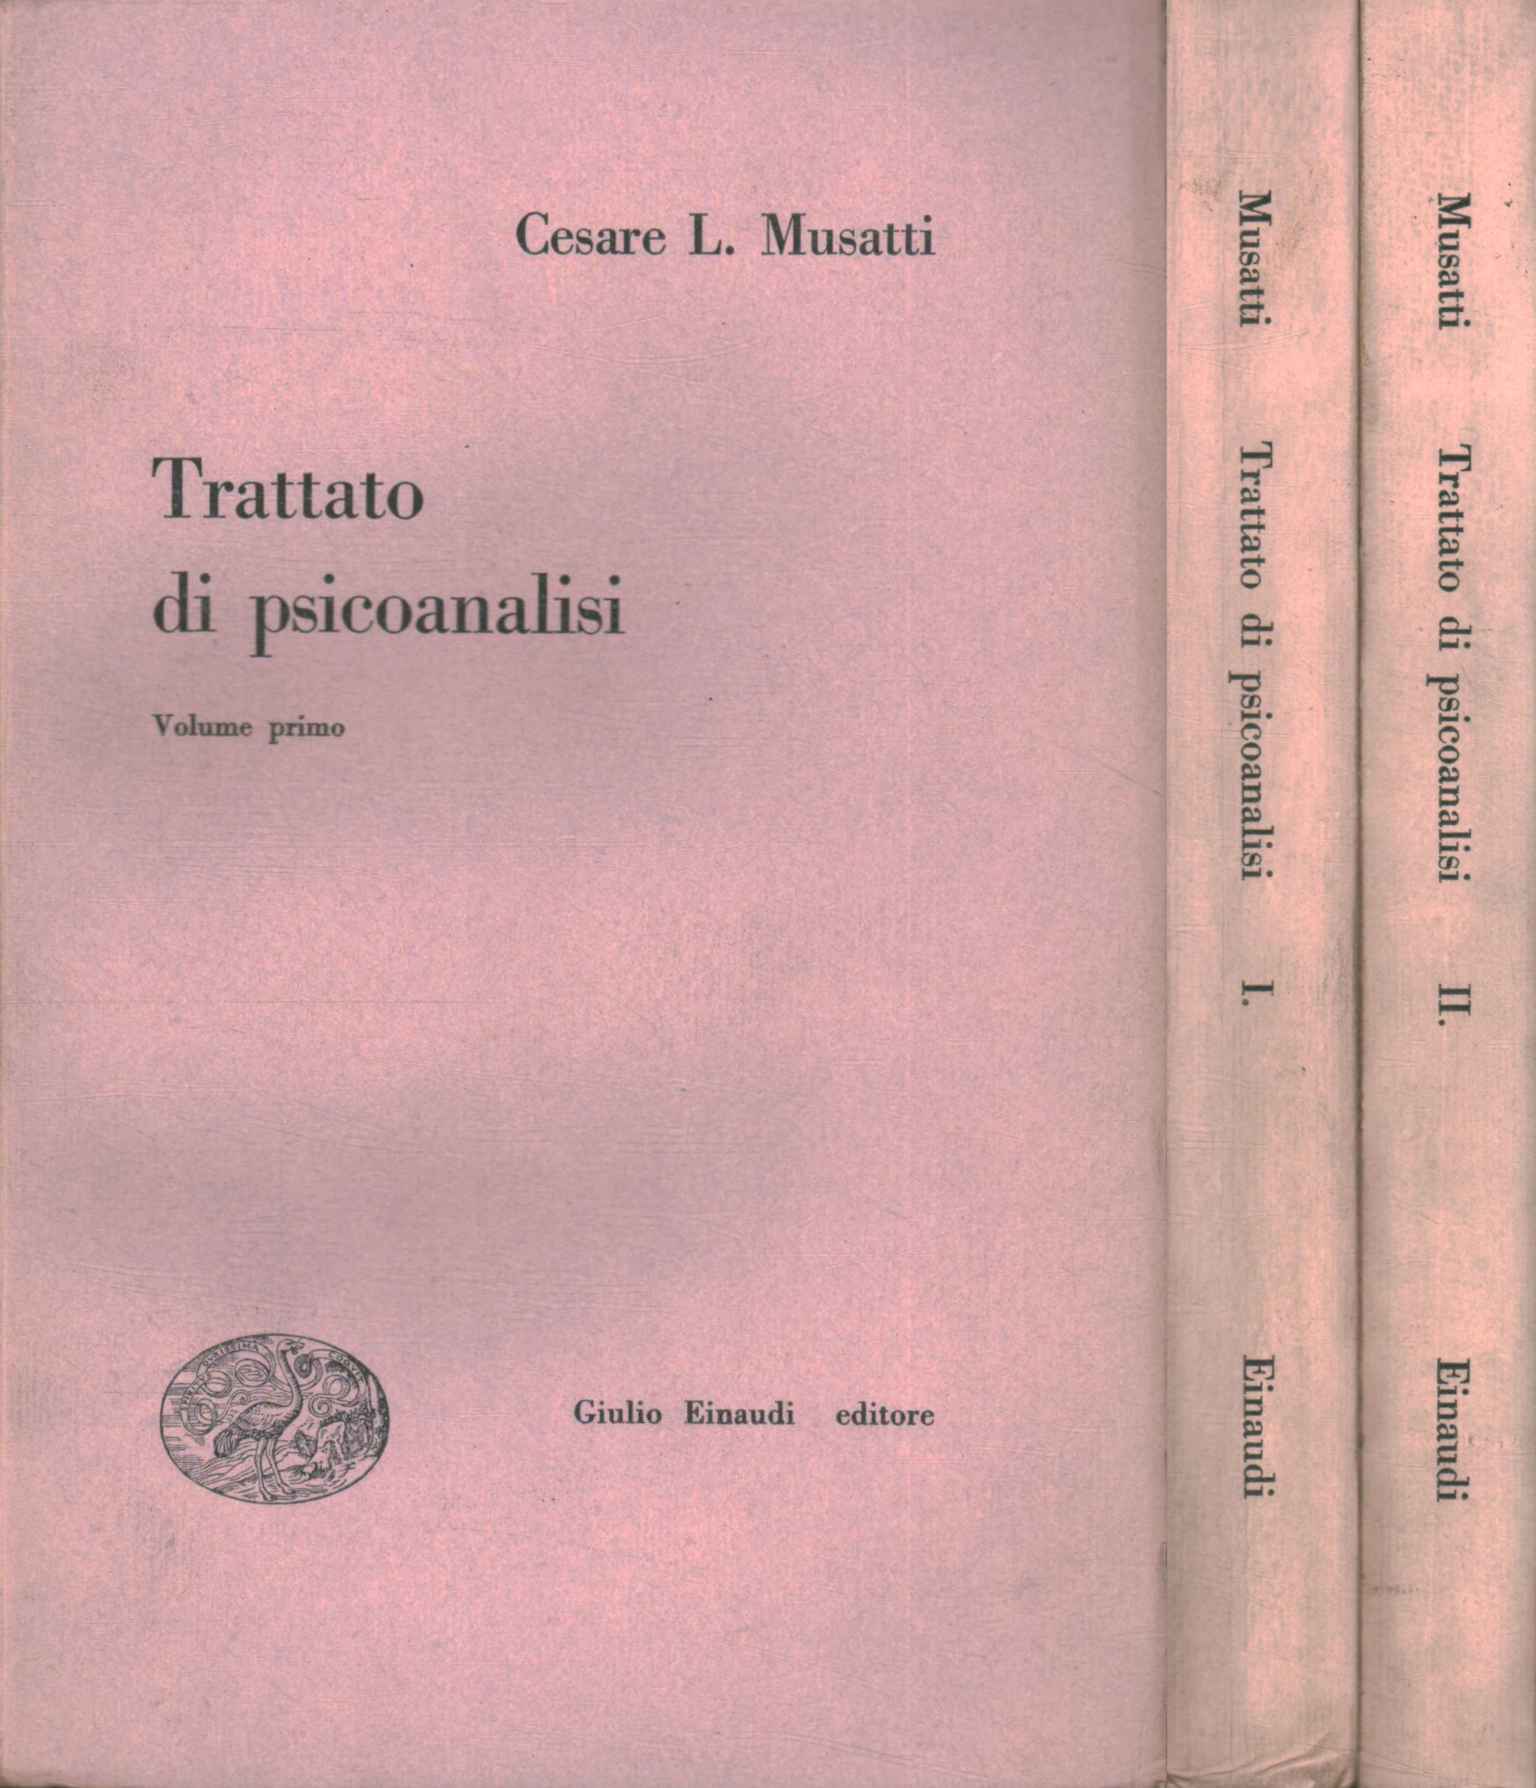 Treatise on psychoanalysis (2 volumes)